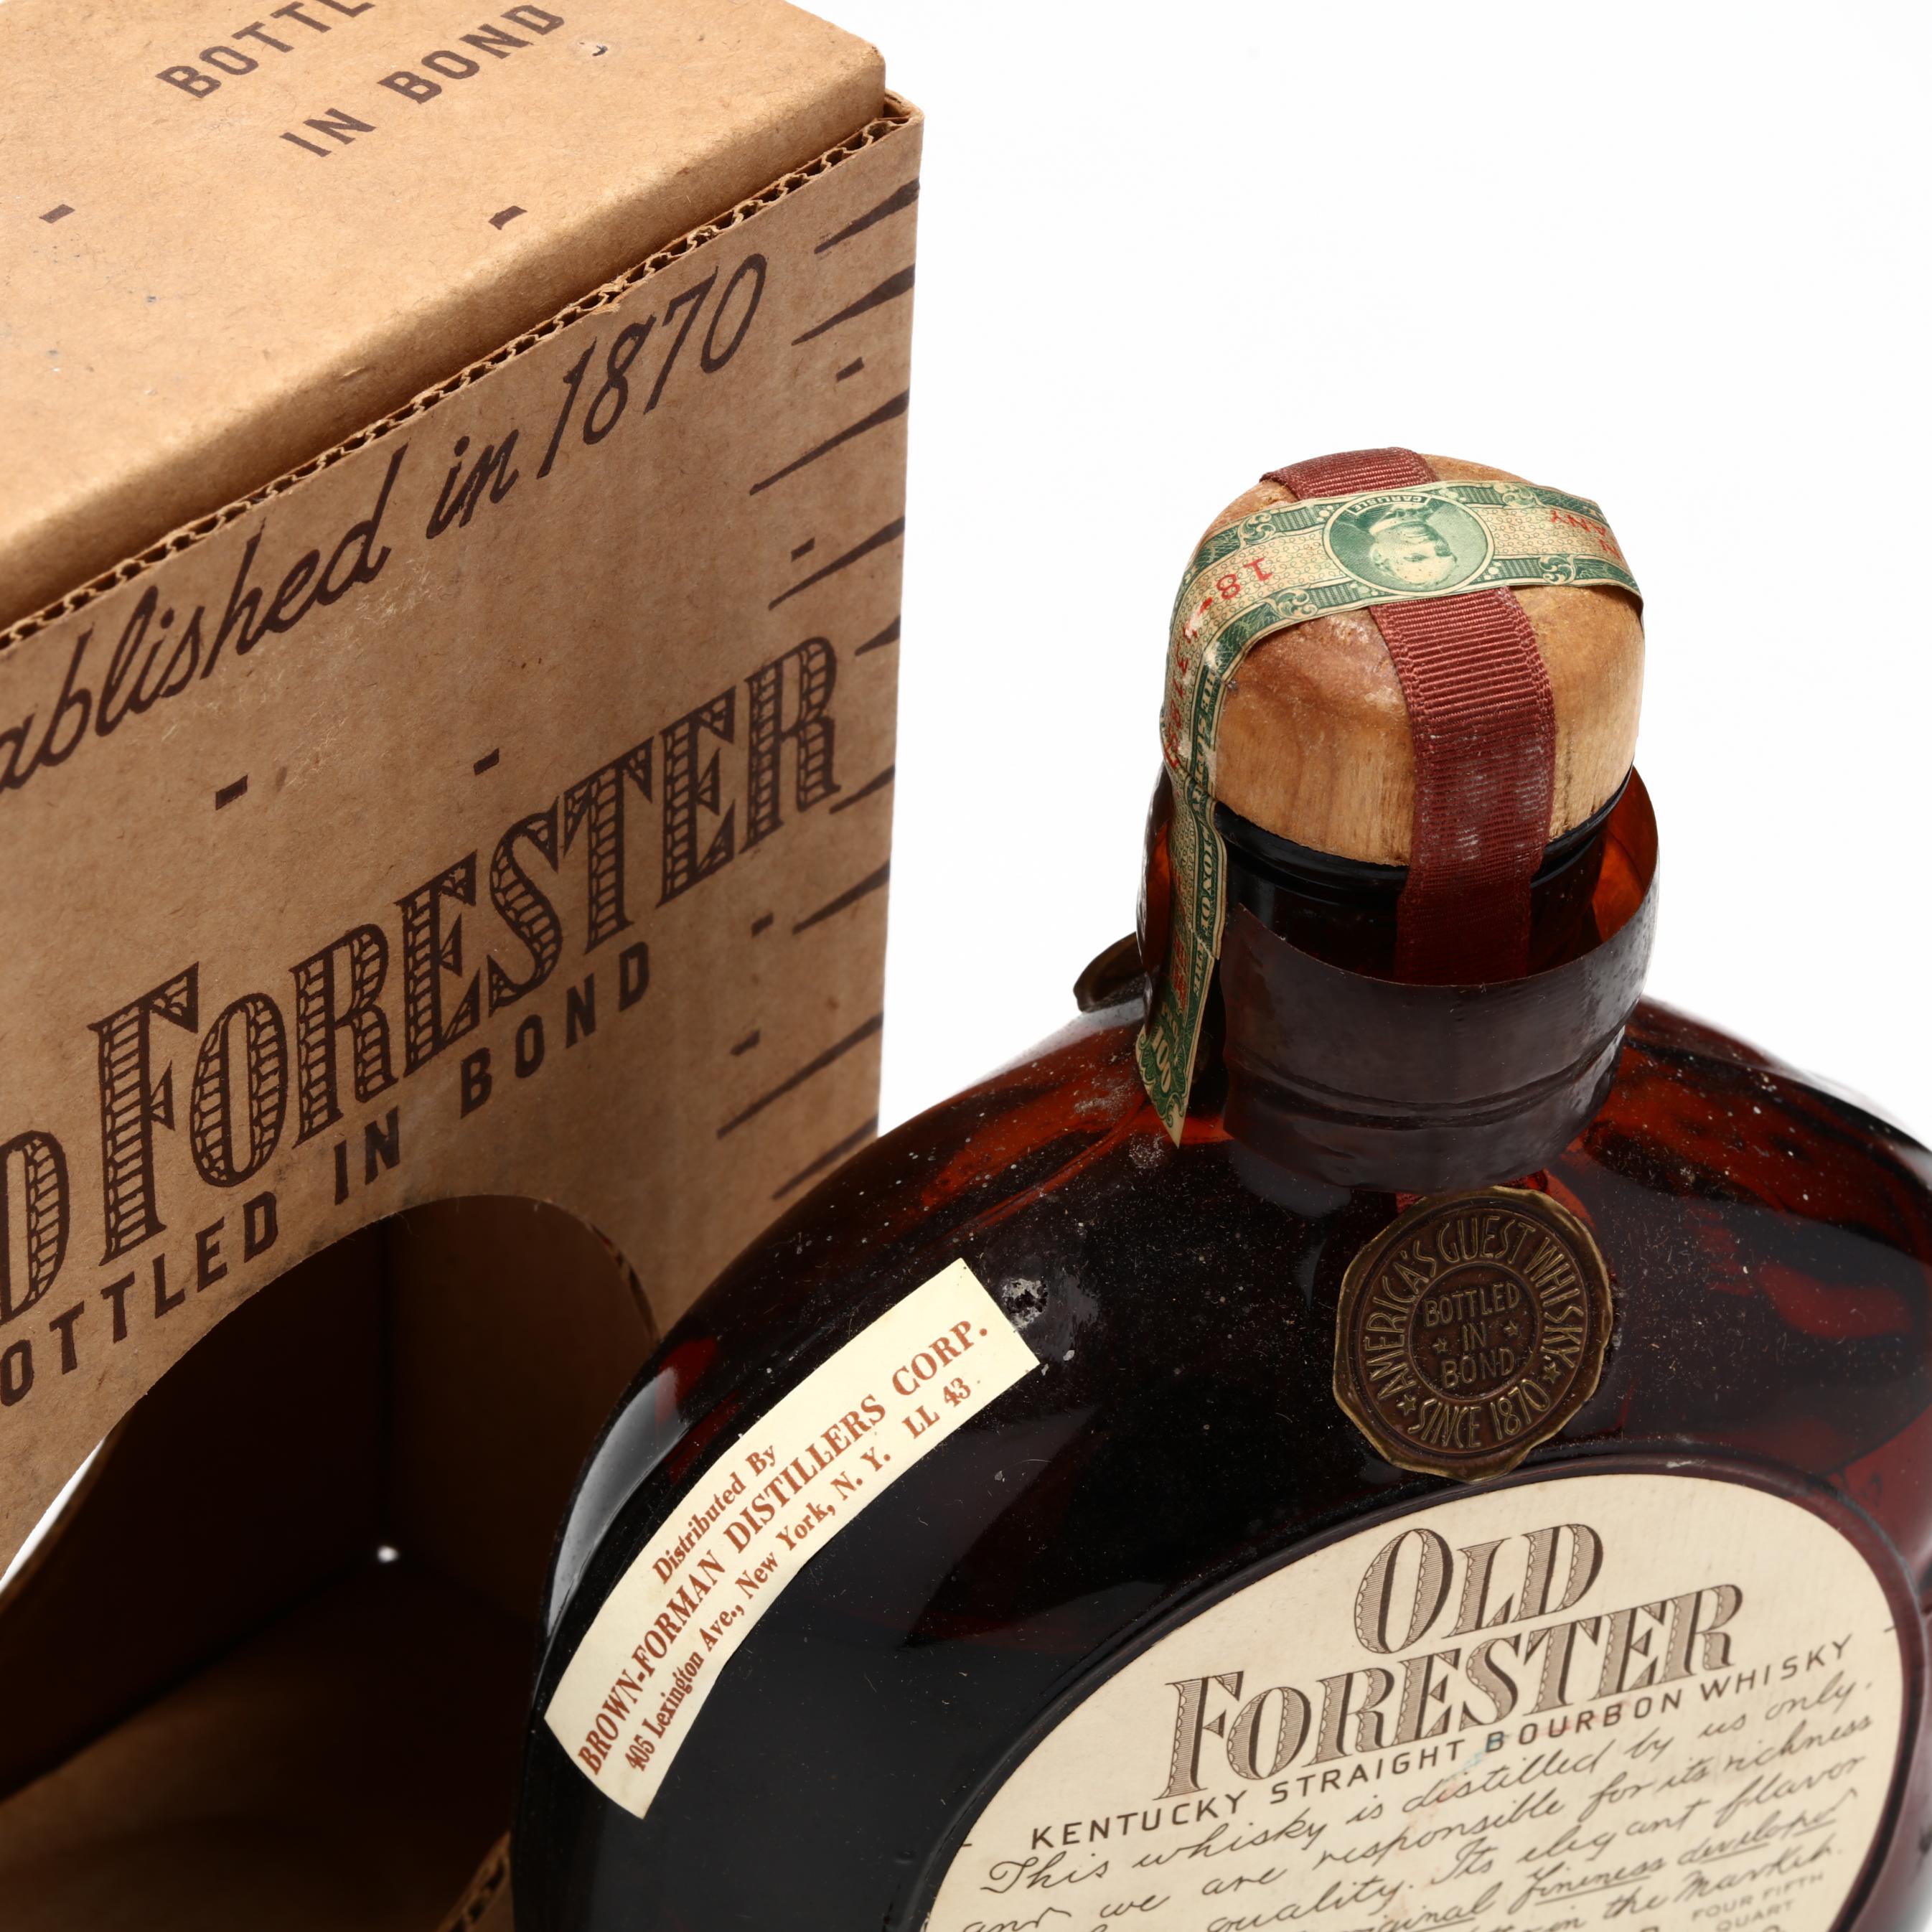 Old Forester Bourbon Whiskey (Lot 6012 - Rare SpiritsJun 11, 2021